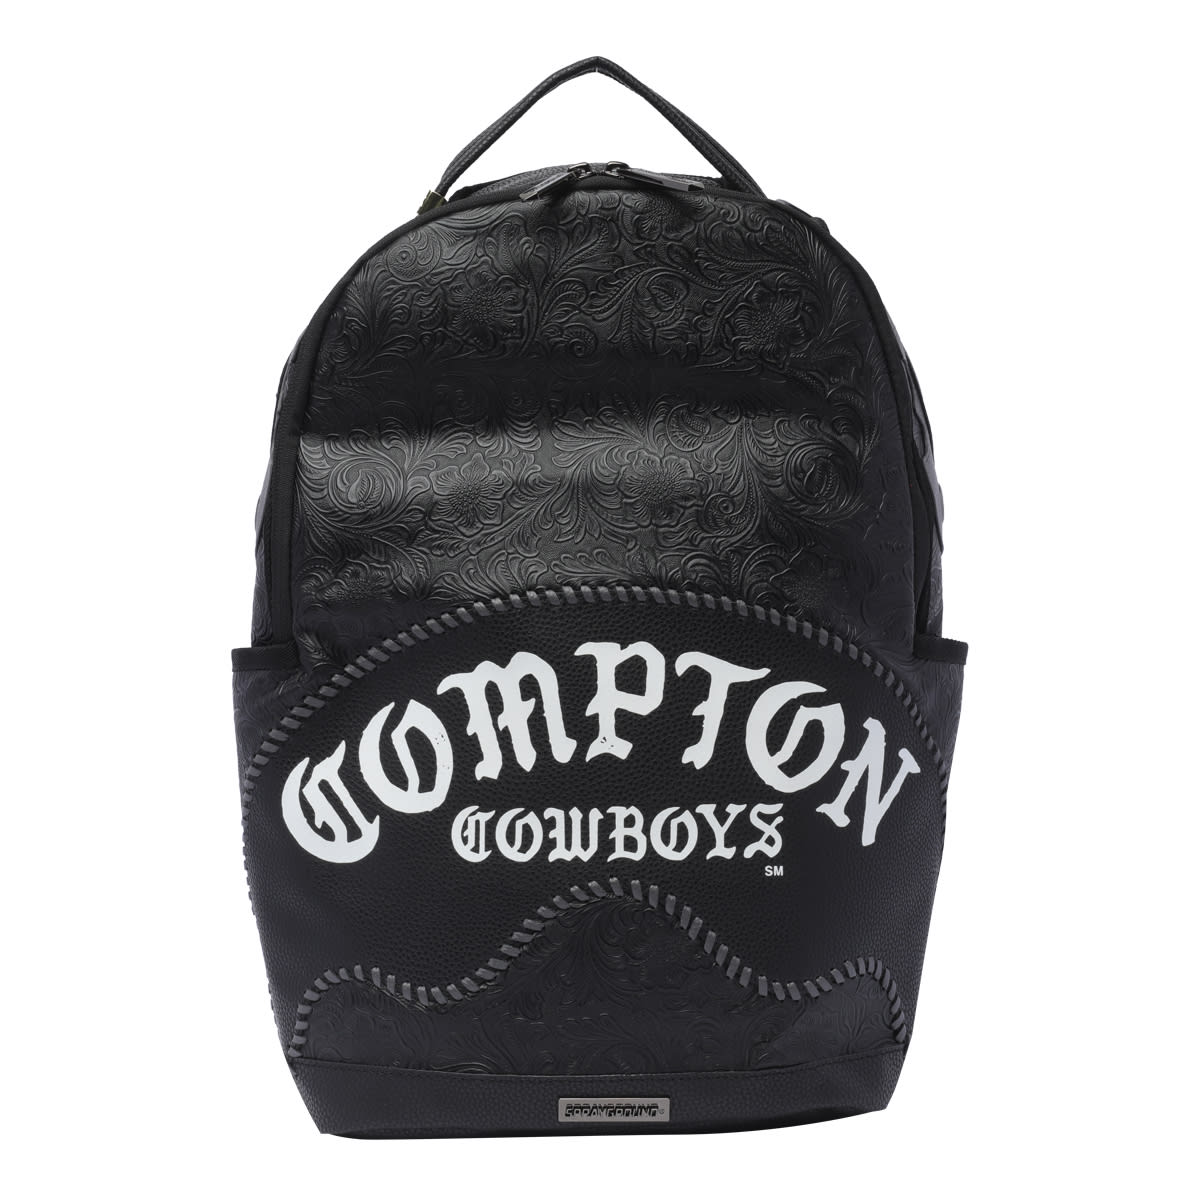 Compton Backpack